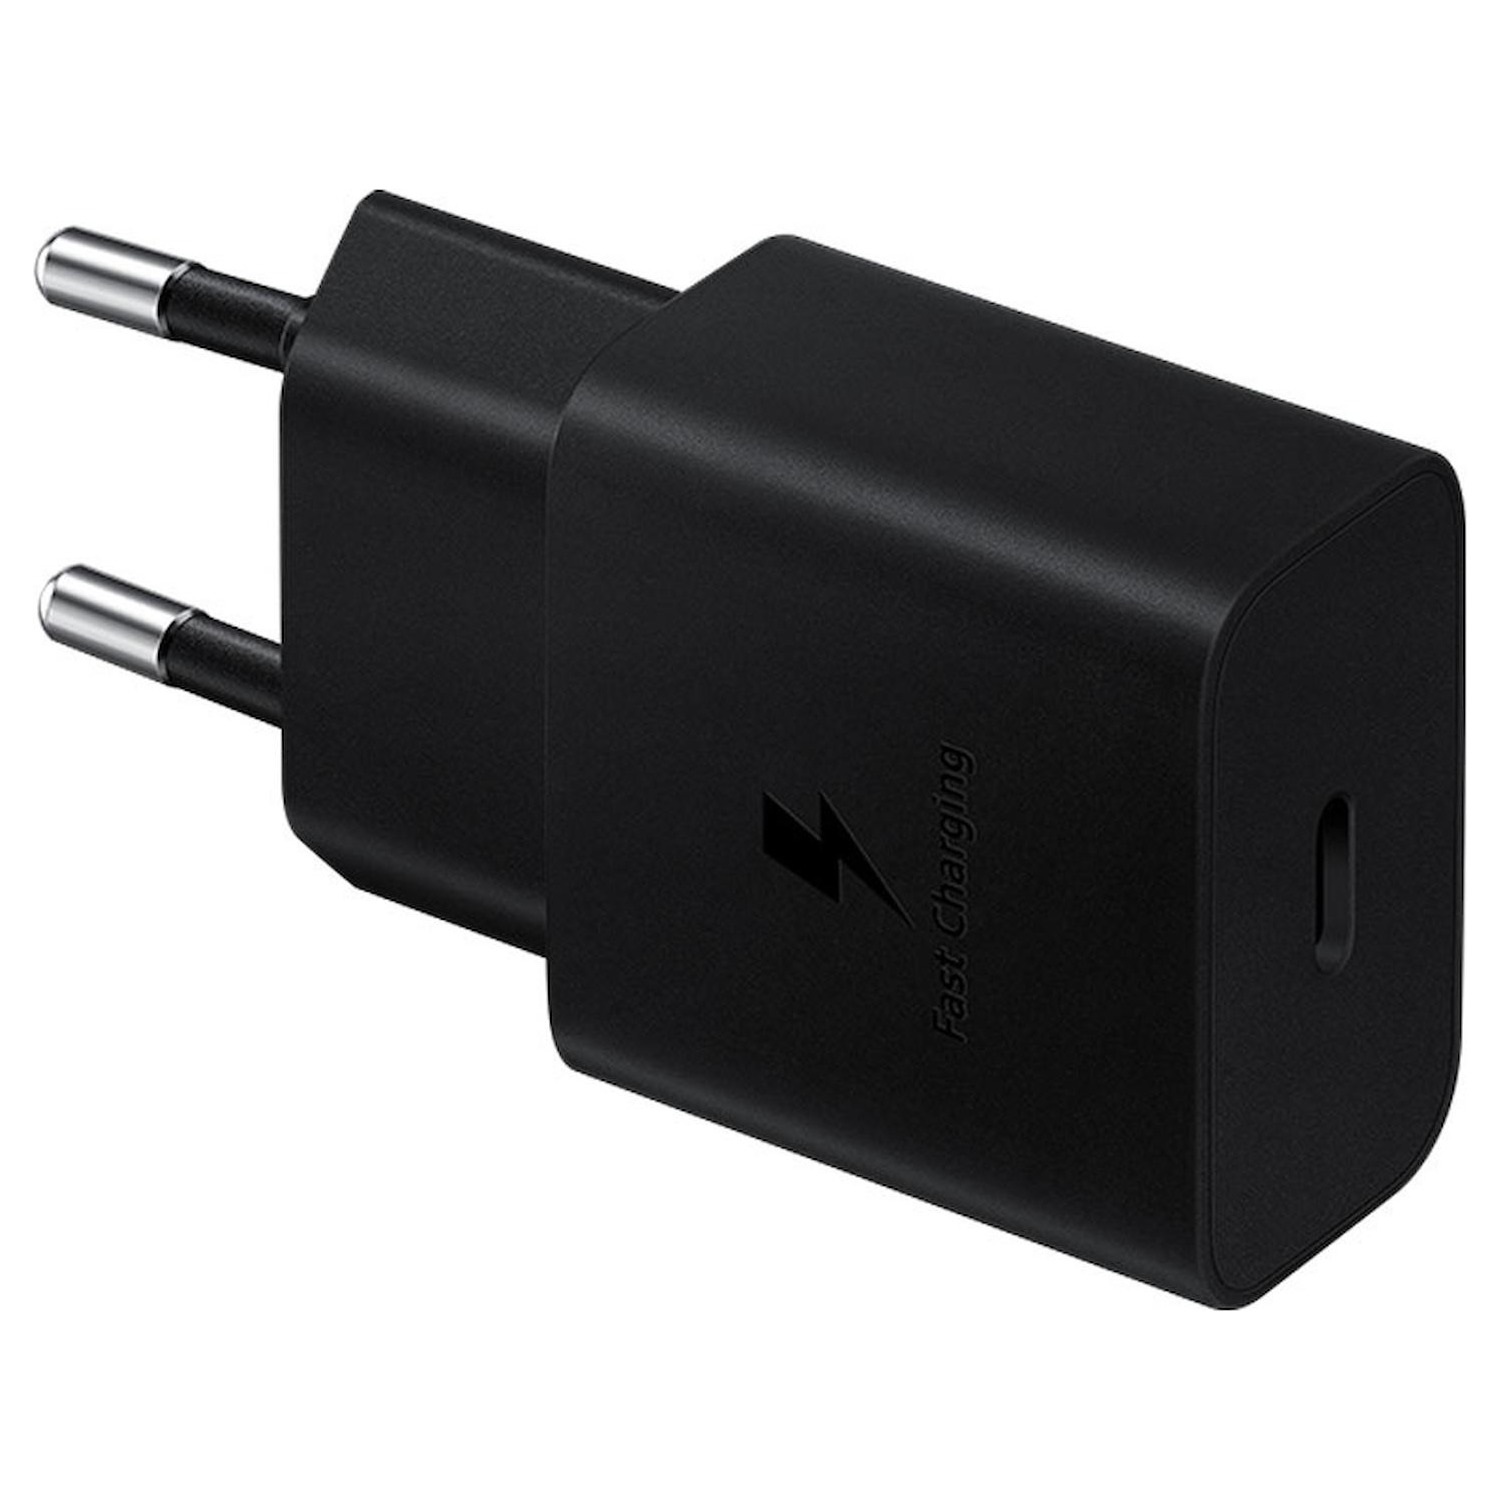 Immagine per Power adapter Samsung 15W senza cavo nero da DIMOStore